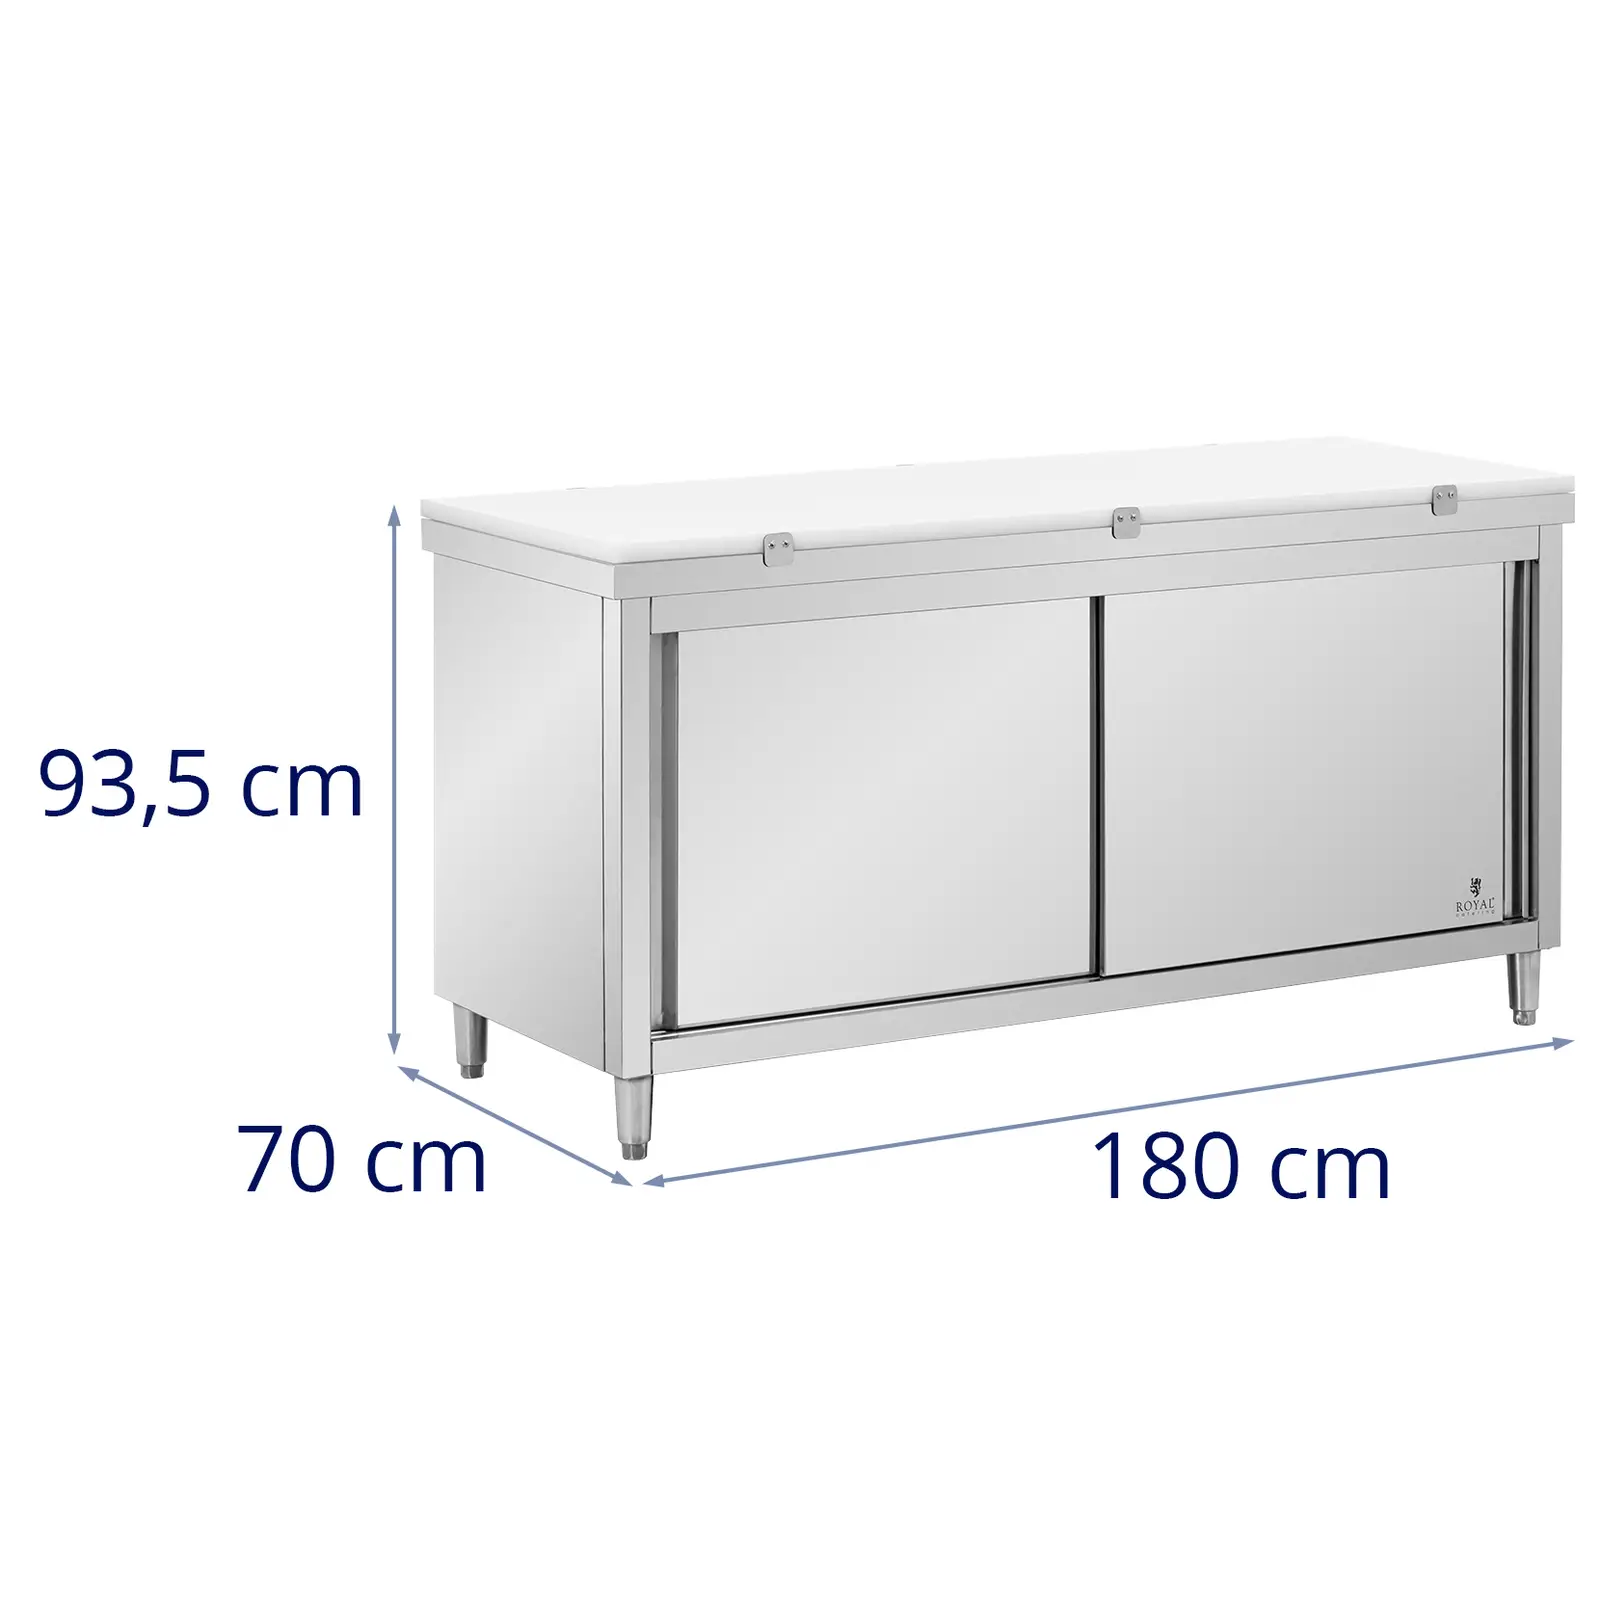 Rozsdamentes acél munkaszekrény - 180 x 70 cm - 500 kg terhelhetőség - tartalmazza Vágódeszka - Royal Catering